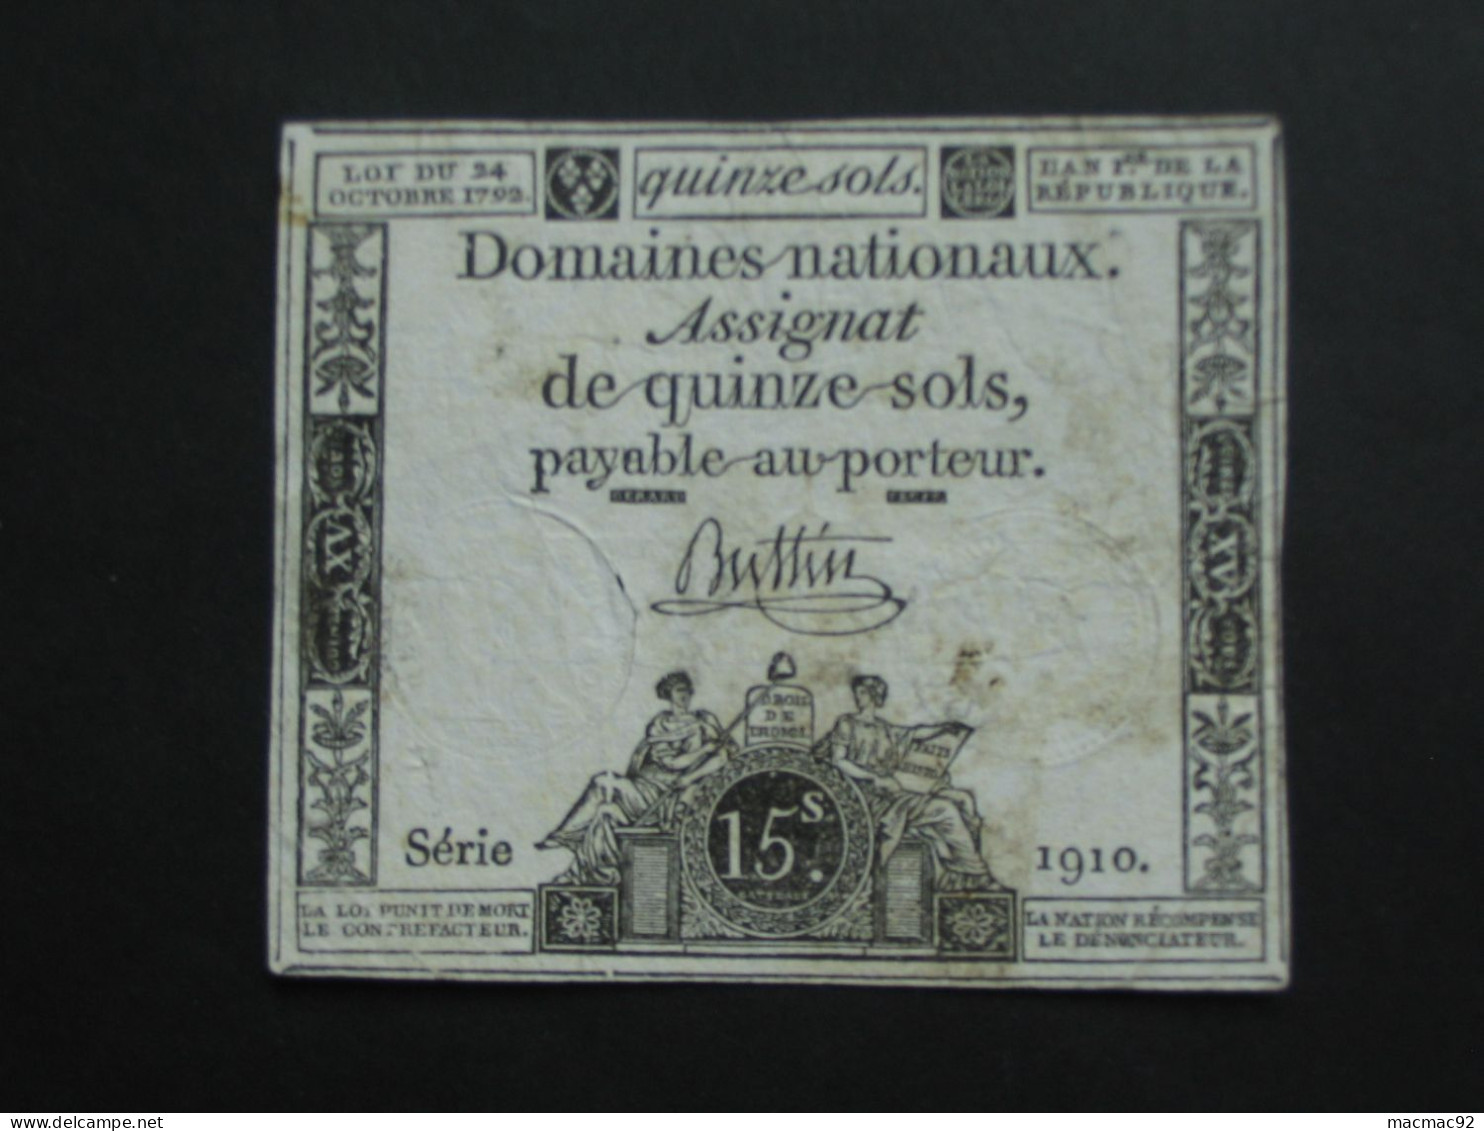 Domaines Nationaux - Assignat Quinze Sols - Loi Du 24 Octobre  1792  **** EN ACHAT IMMEDIAT **** - Assignats